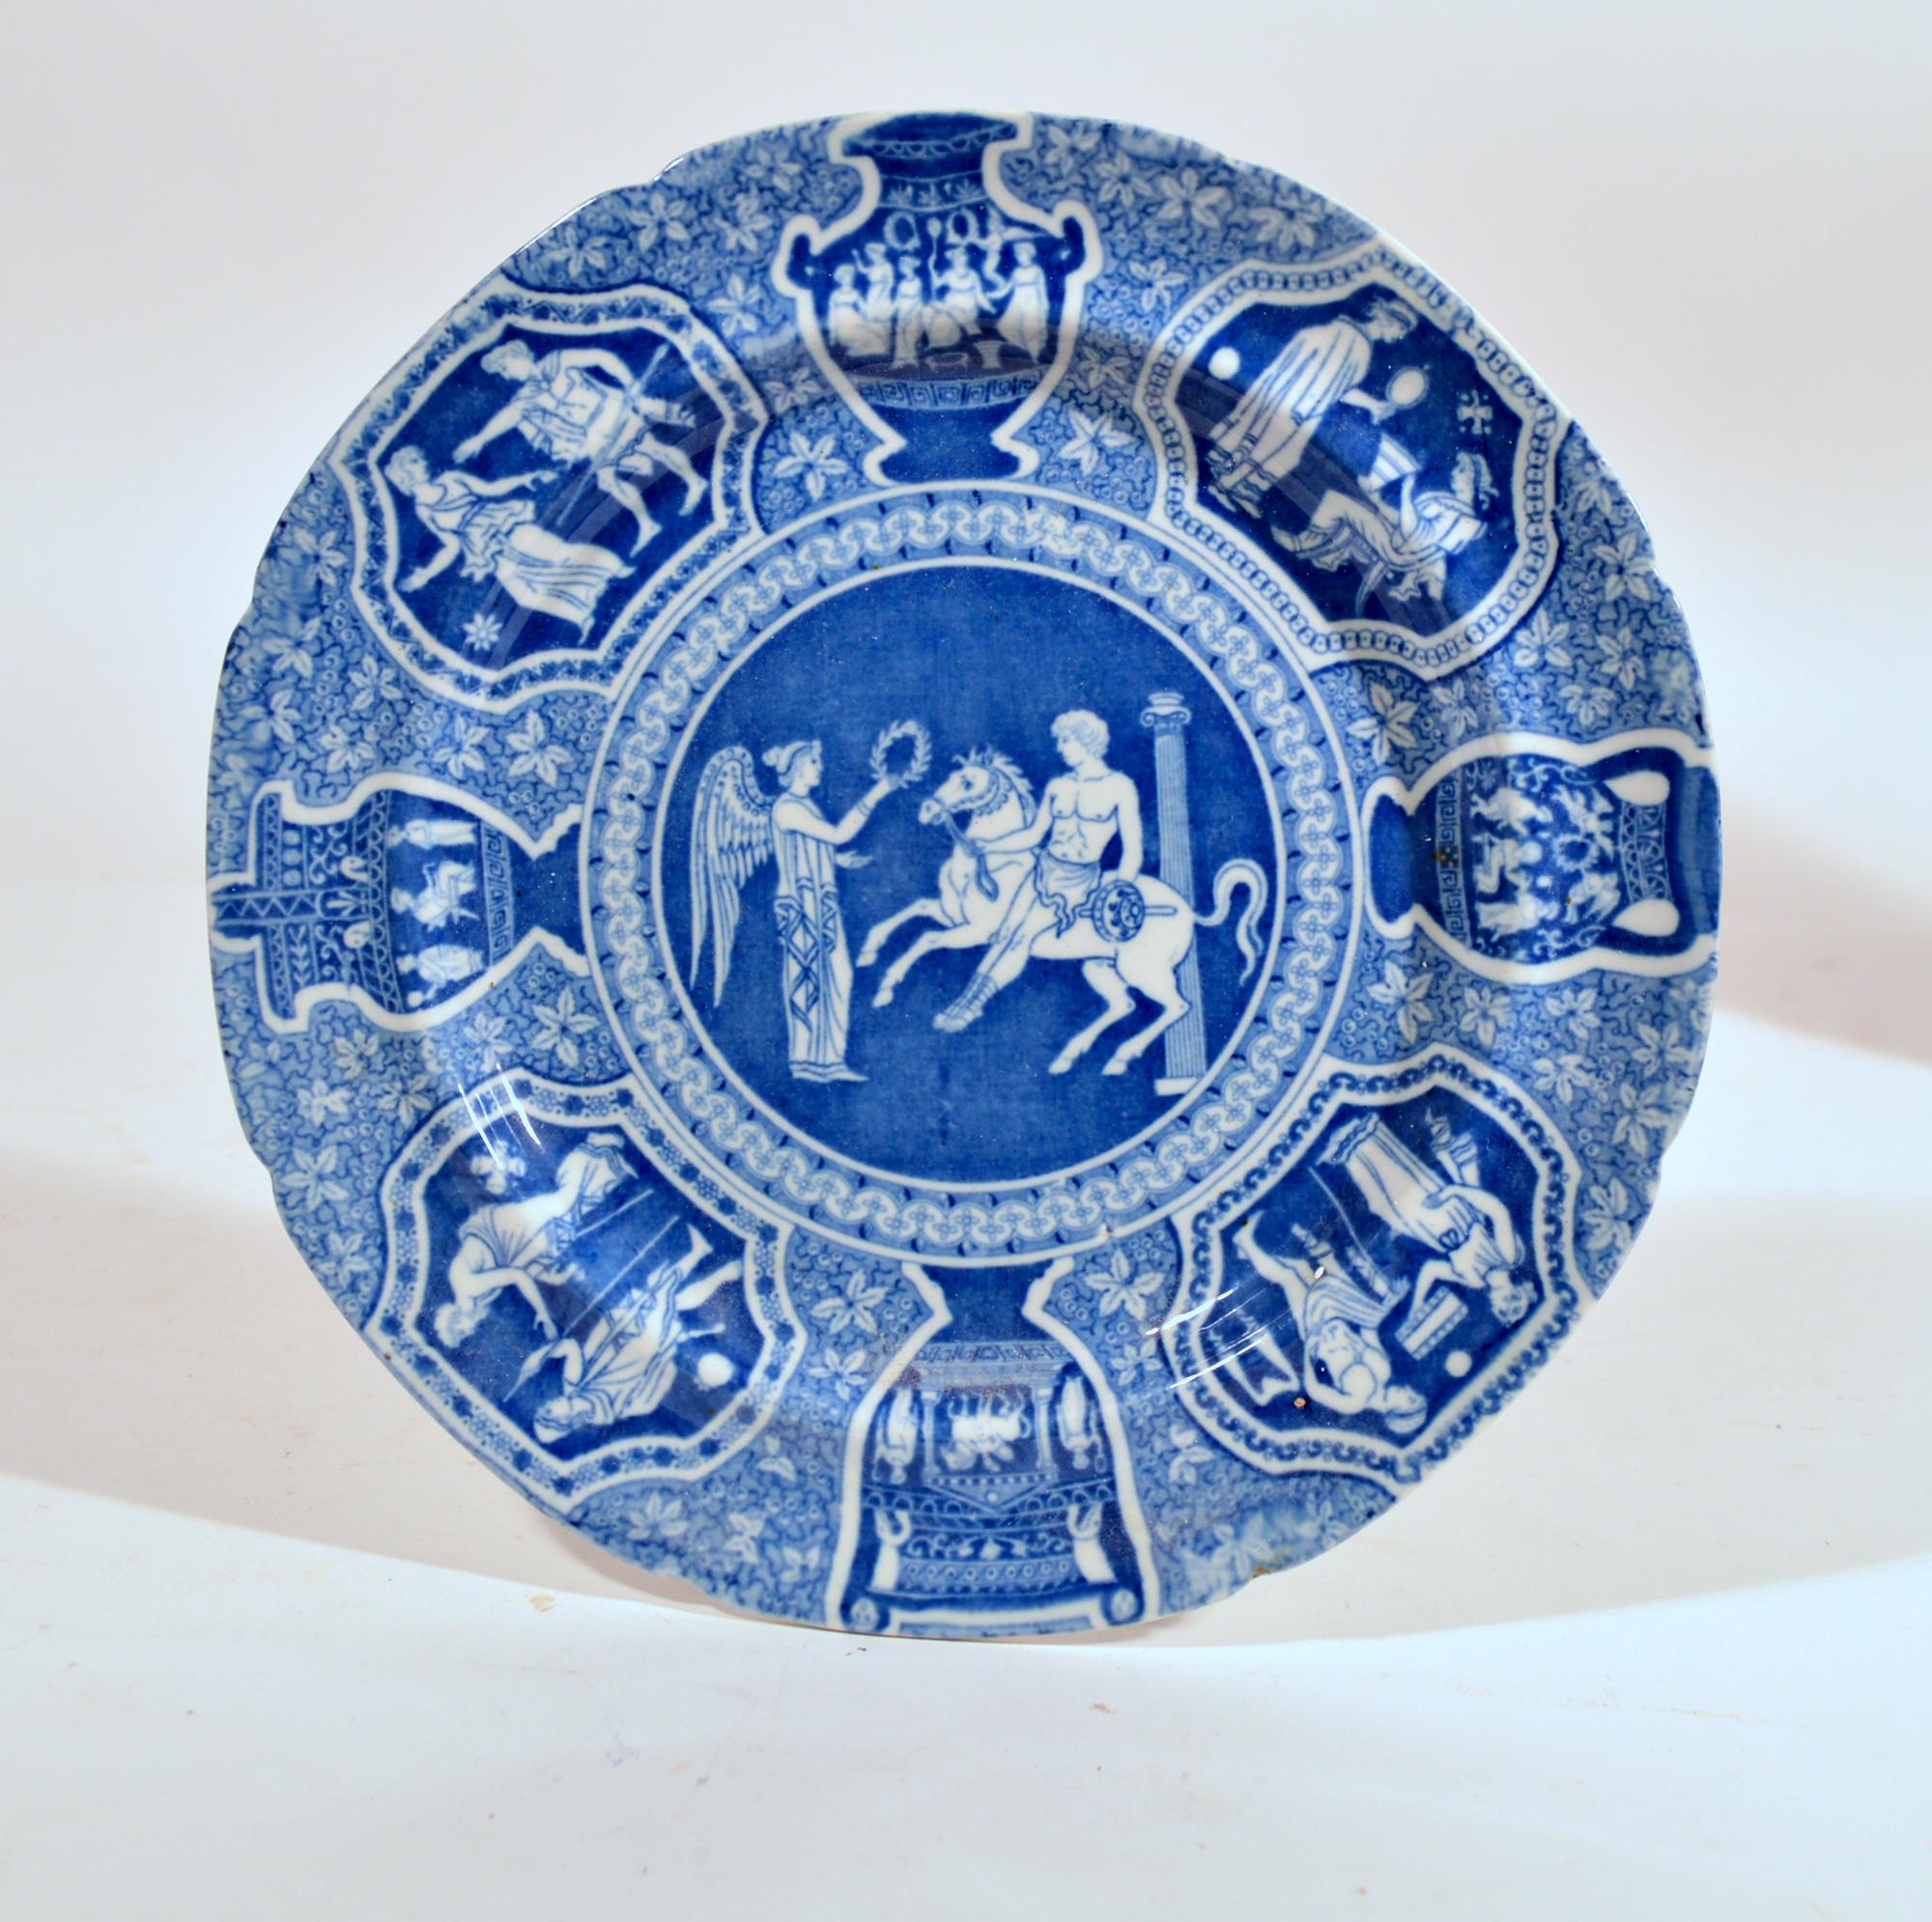 Spode Pottery Neo-classical Greek Pattern Blue Salad Plates,
 Erfrischung für den Phliasischen Reiter (Satz von fünfzehn)
Anfang 19. Jahrhundert

Aus einer großen Sammlung von Spode Greek Pattern Objekten - bitte erkundigen Sie sich nach